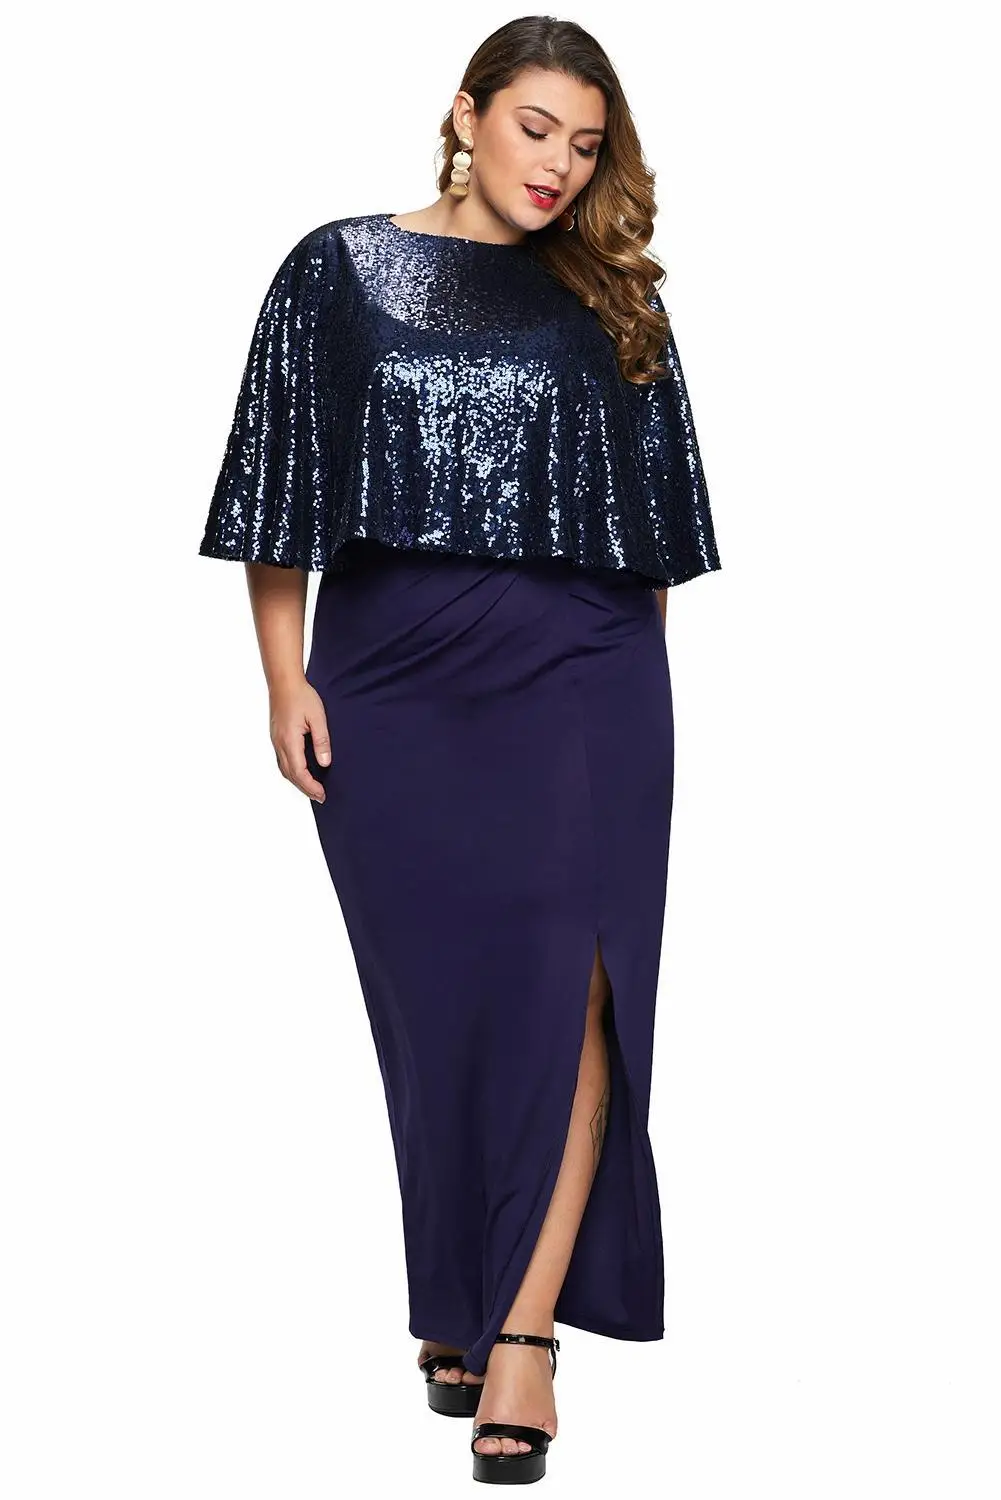 Черная/синяя Мерцающая накидка с пайетками размера плюс 5XL 4XL 3XL Макси-Платье Женская мода с разрезом по бокам элегантные вечерние длинные платья